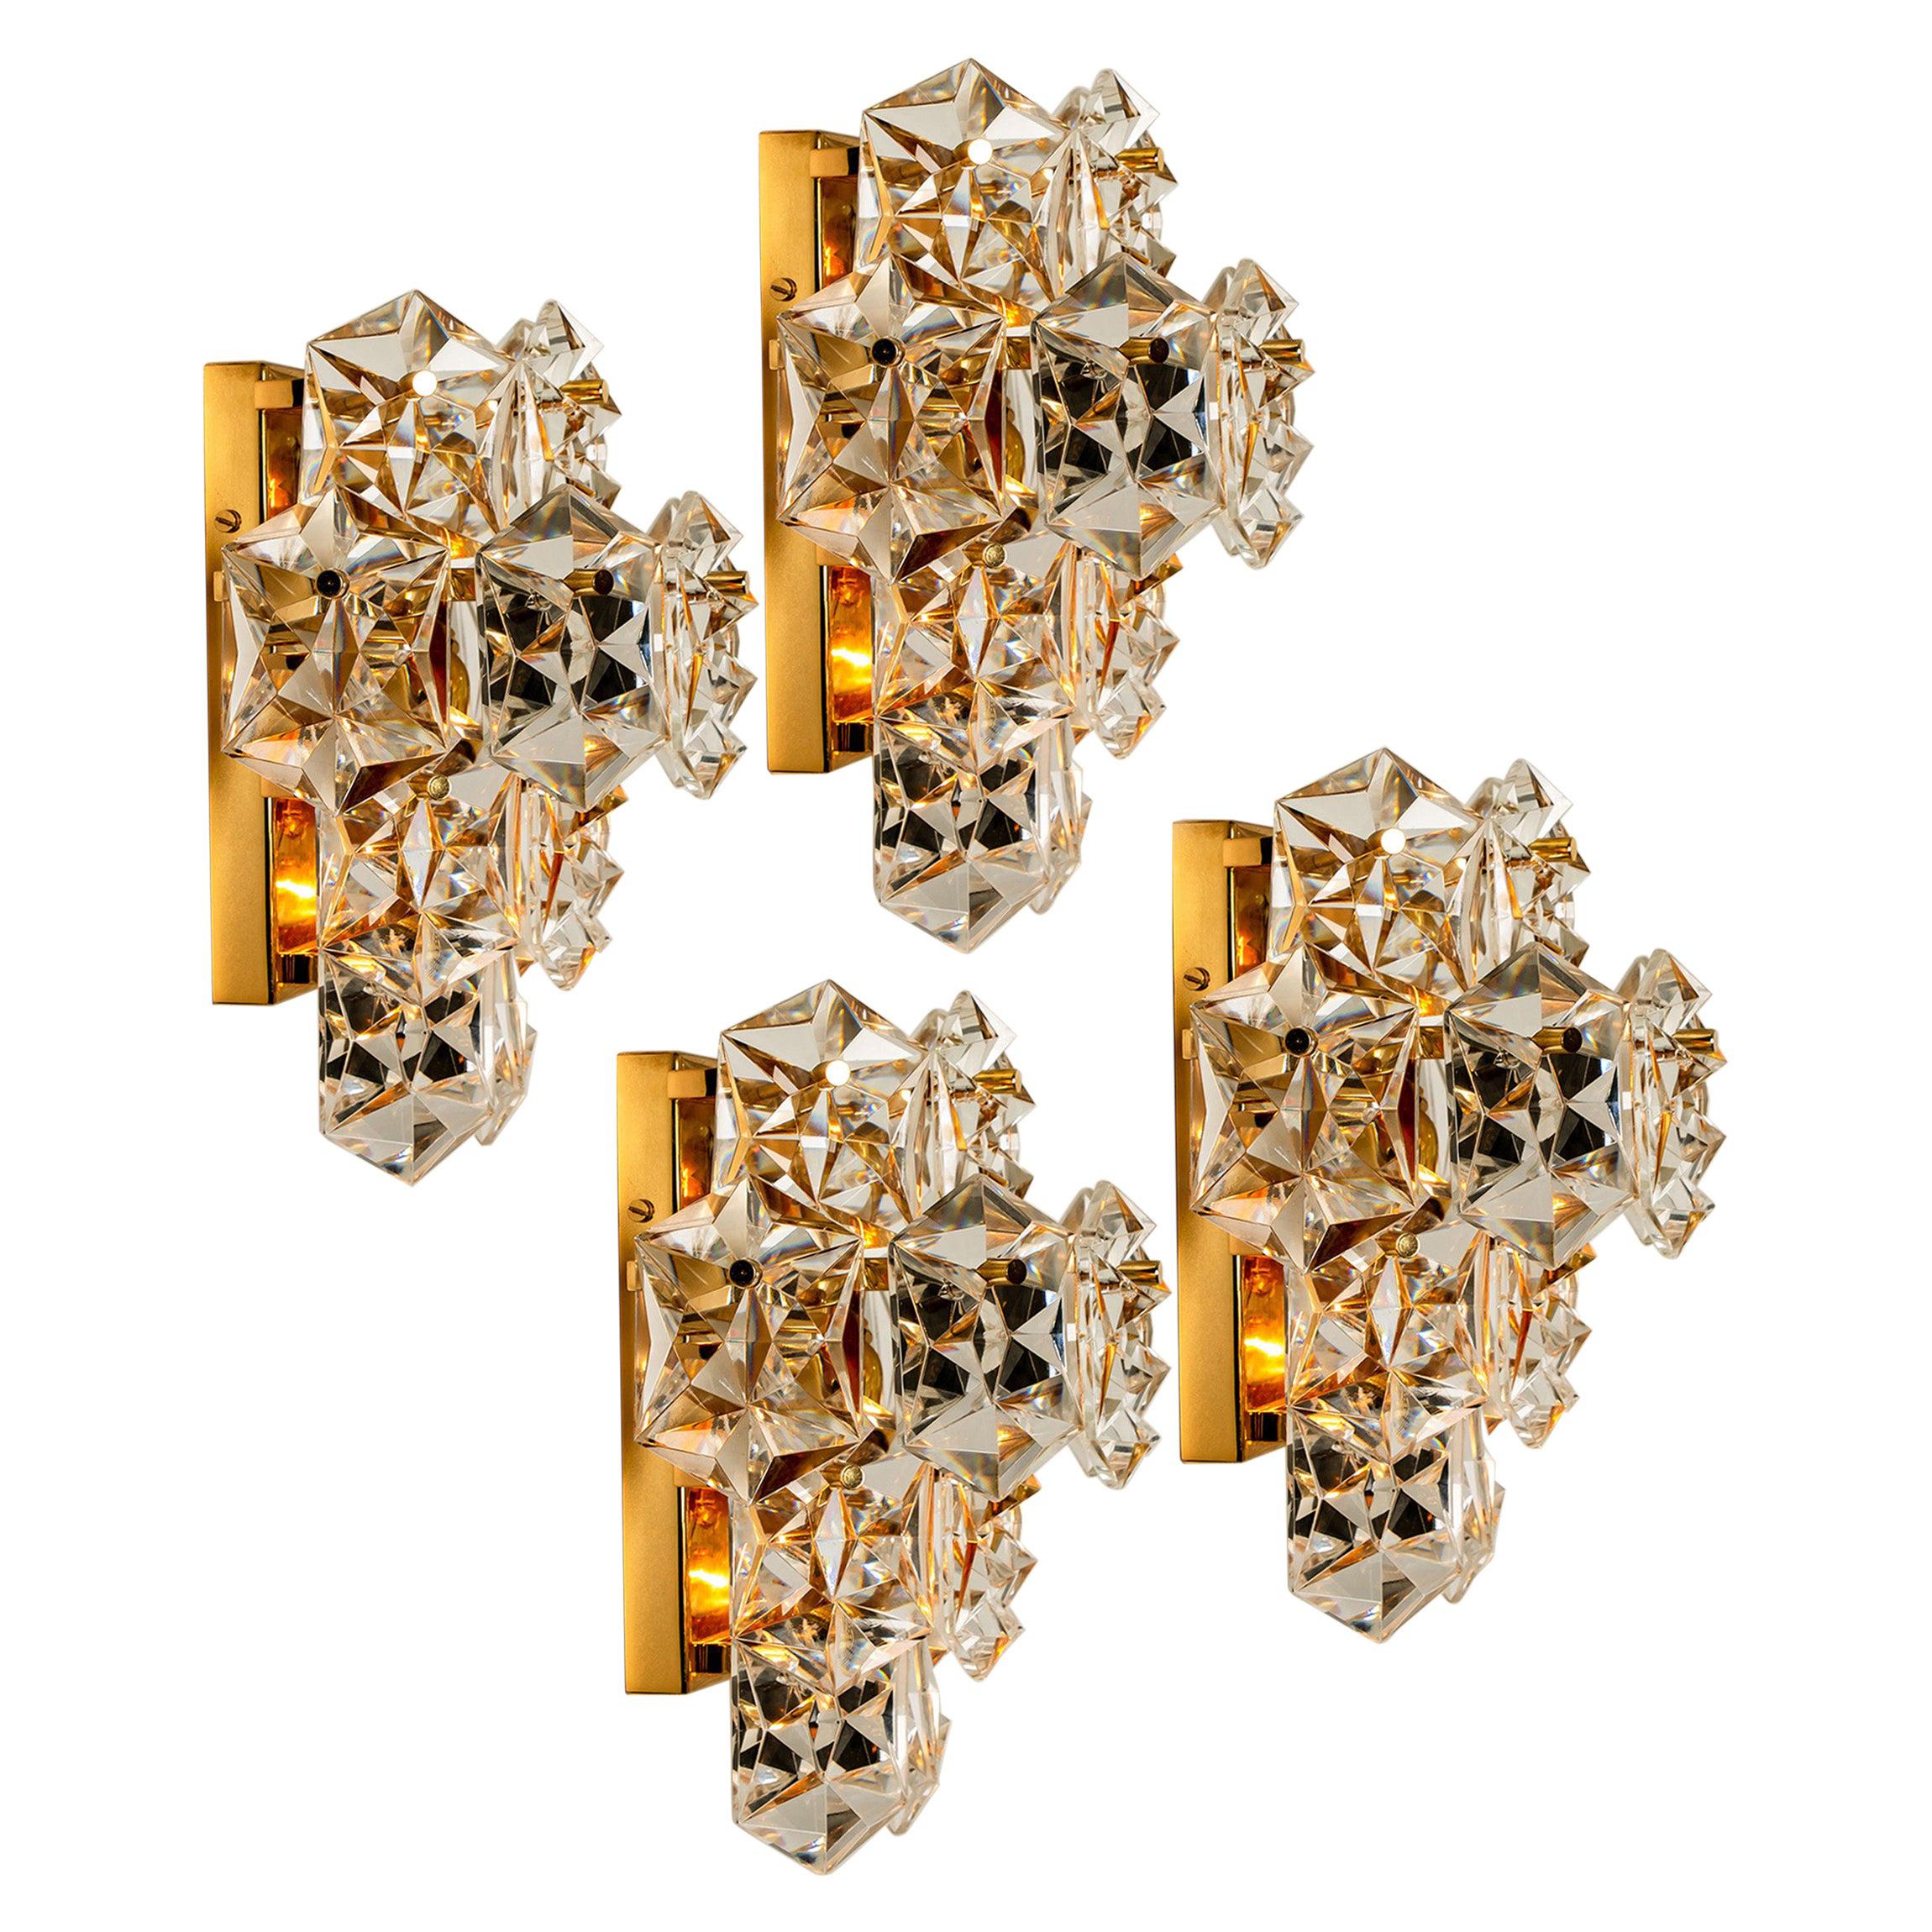 1 der 4 luxuriösen Paare von vergoldeten Rahmen und dicken Diamantkristall-Leuchten des famosen Herstellers Kinkeldey. Sehr elegante Beleuchtungskörper, die sich mit allen Einrichtungsstilen kombinieren lassen. Die Kristalle sind sorgfältig so